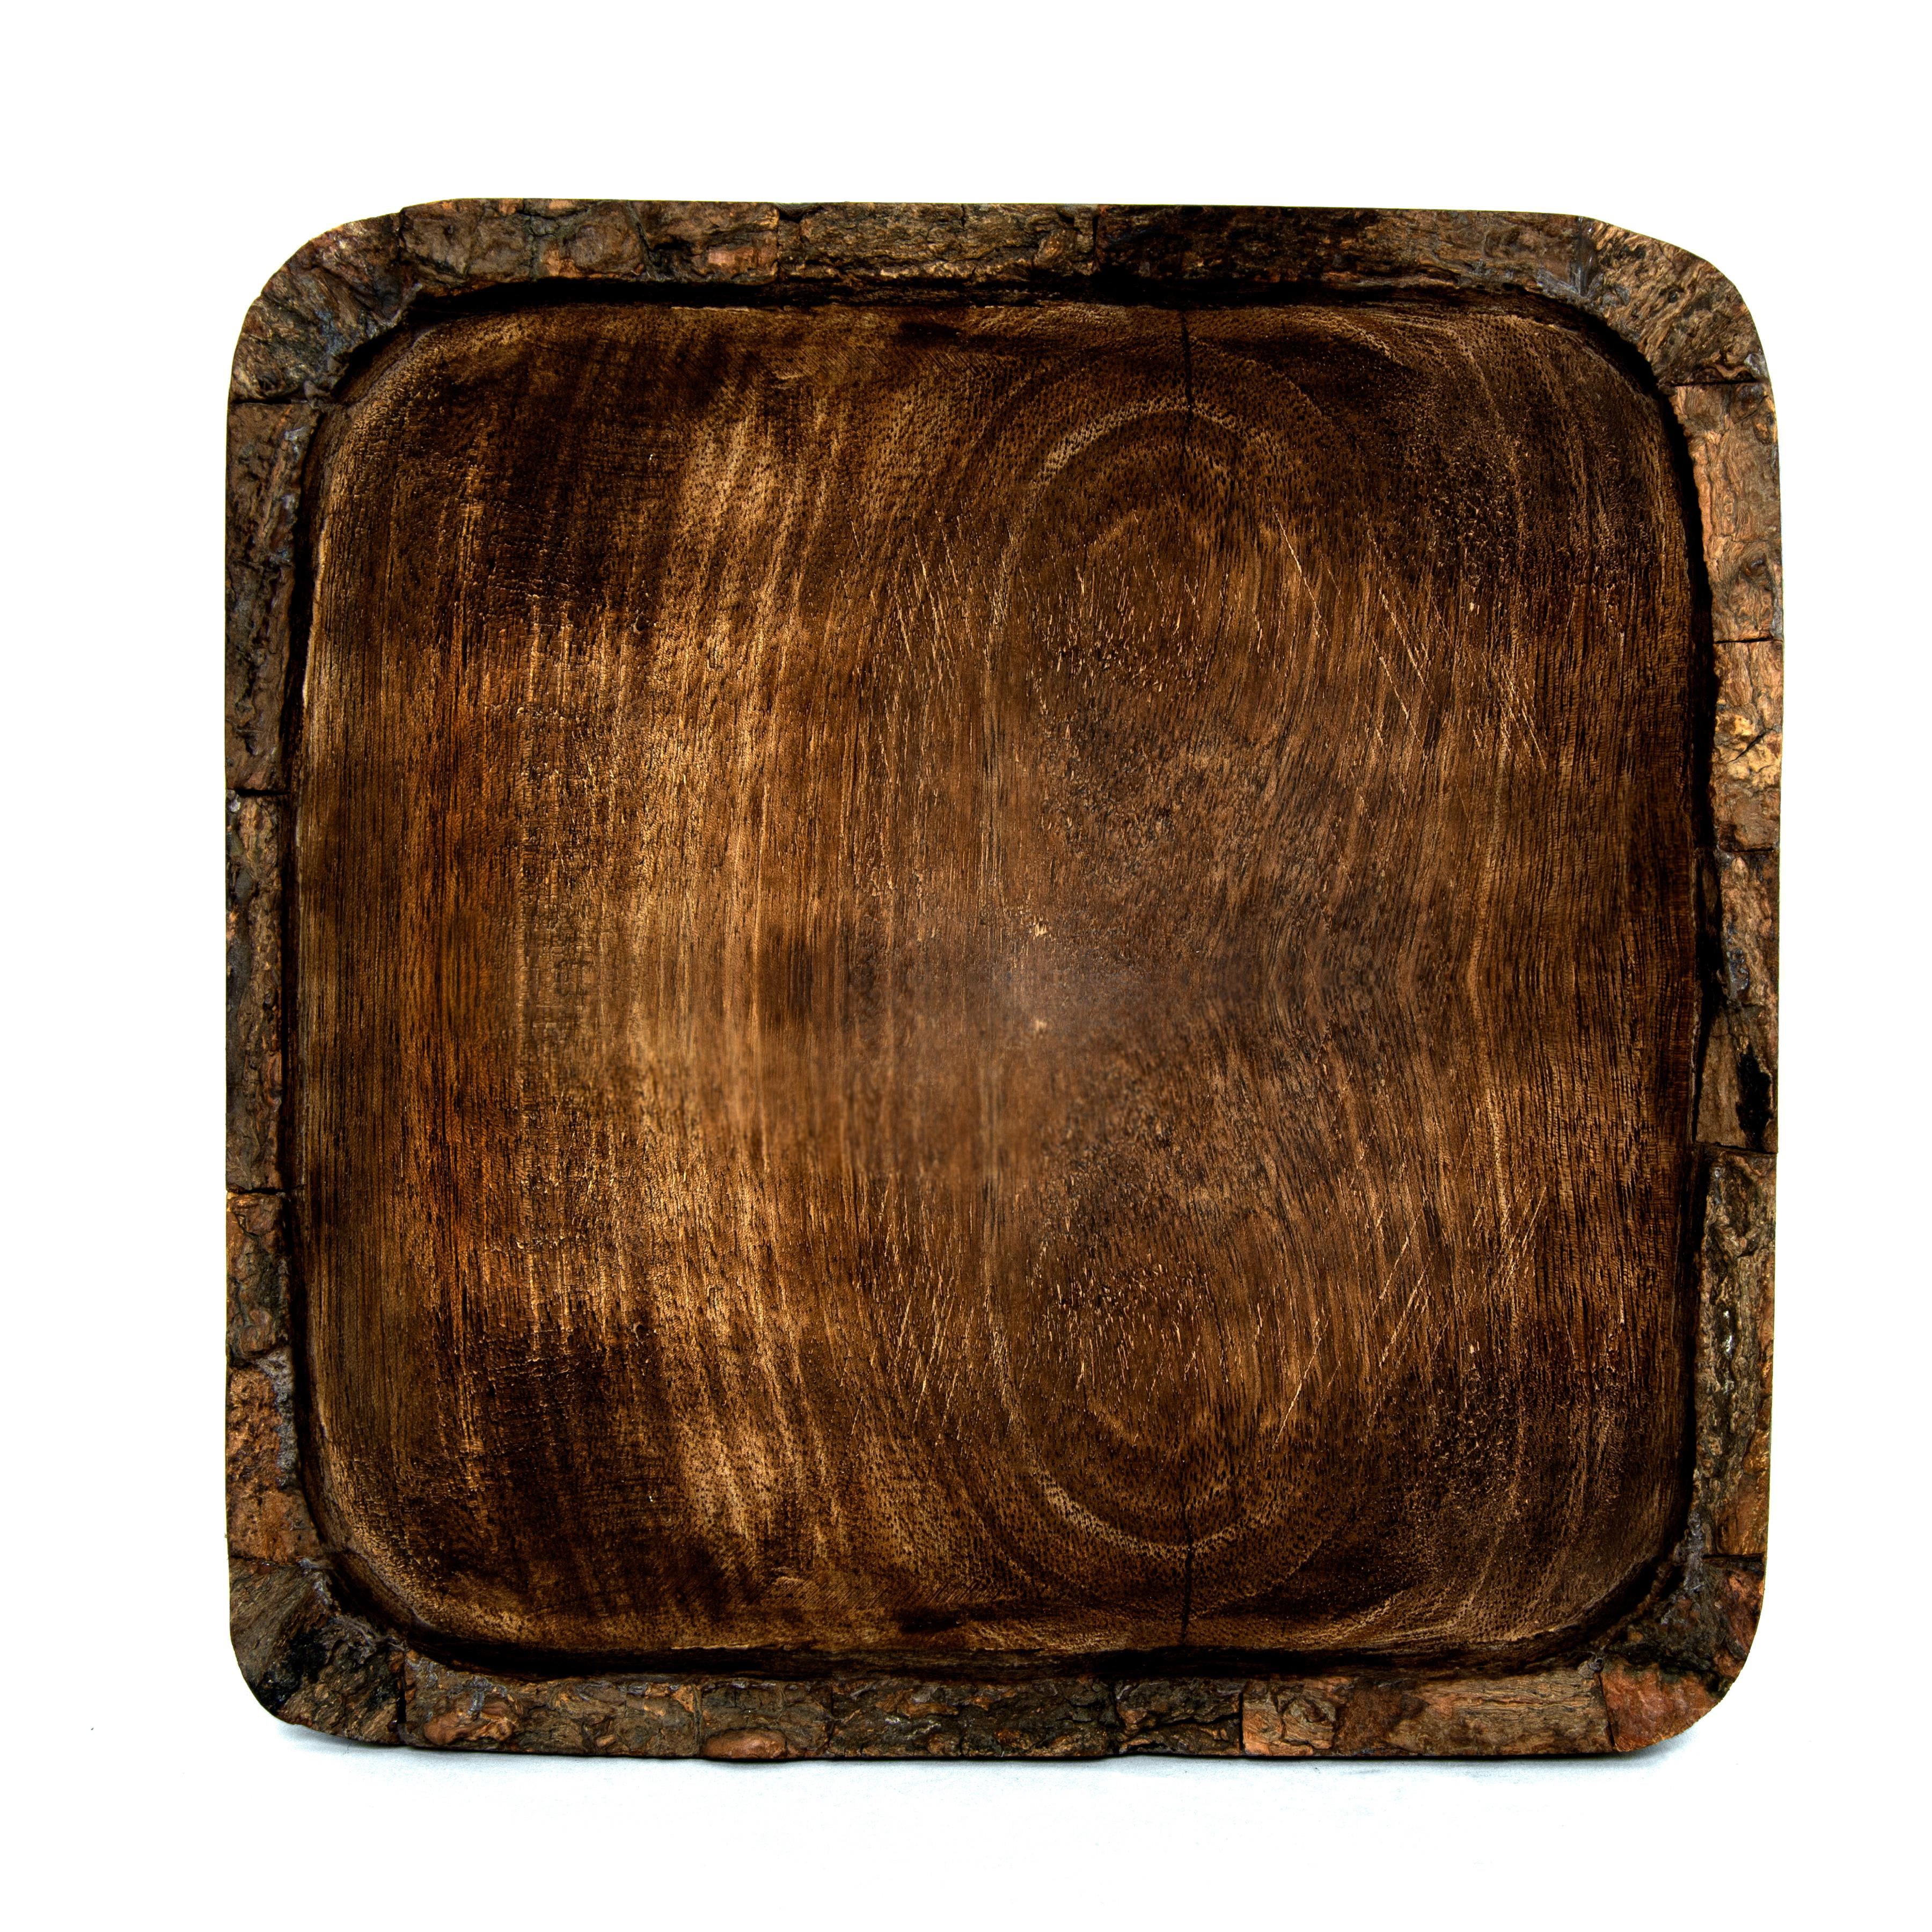 6X6X1.5 Serving Bowl Heritage Lace Artisan Wood BK-001 Natural